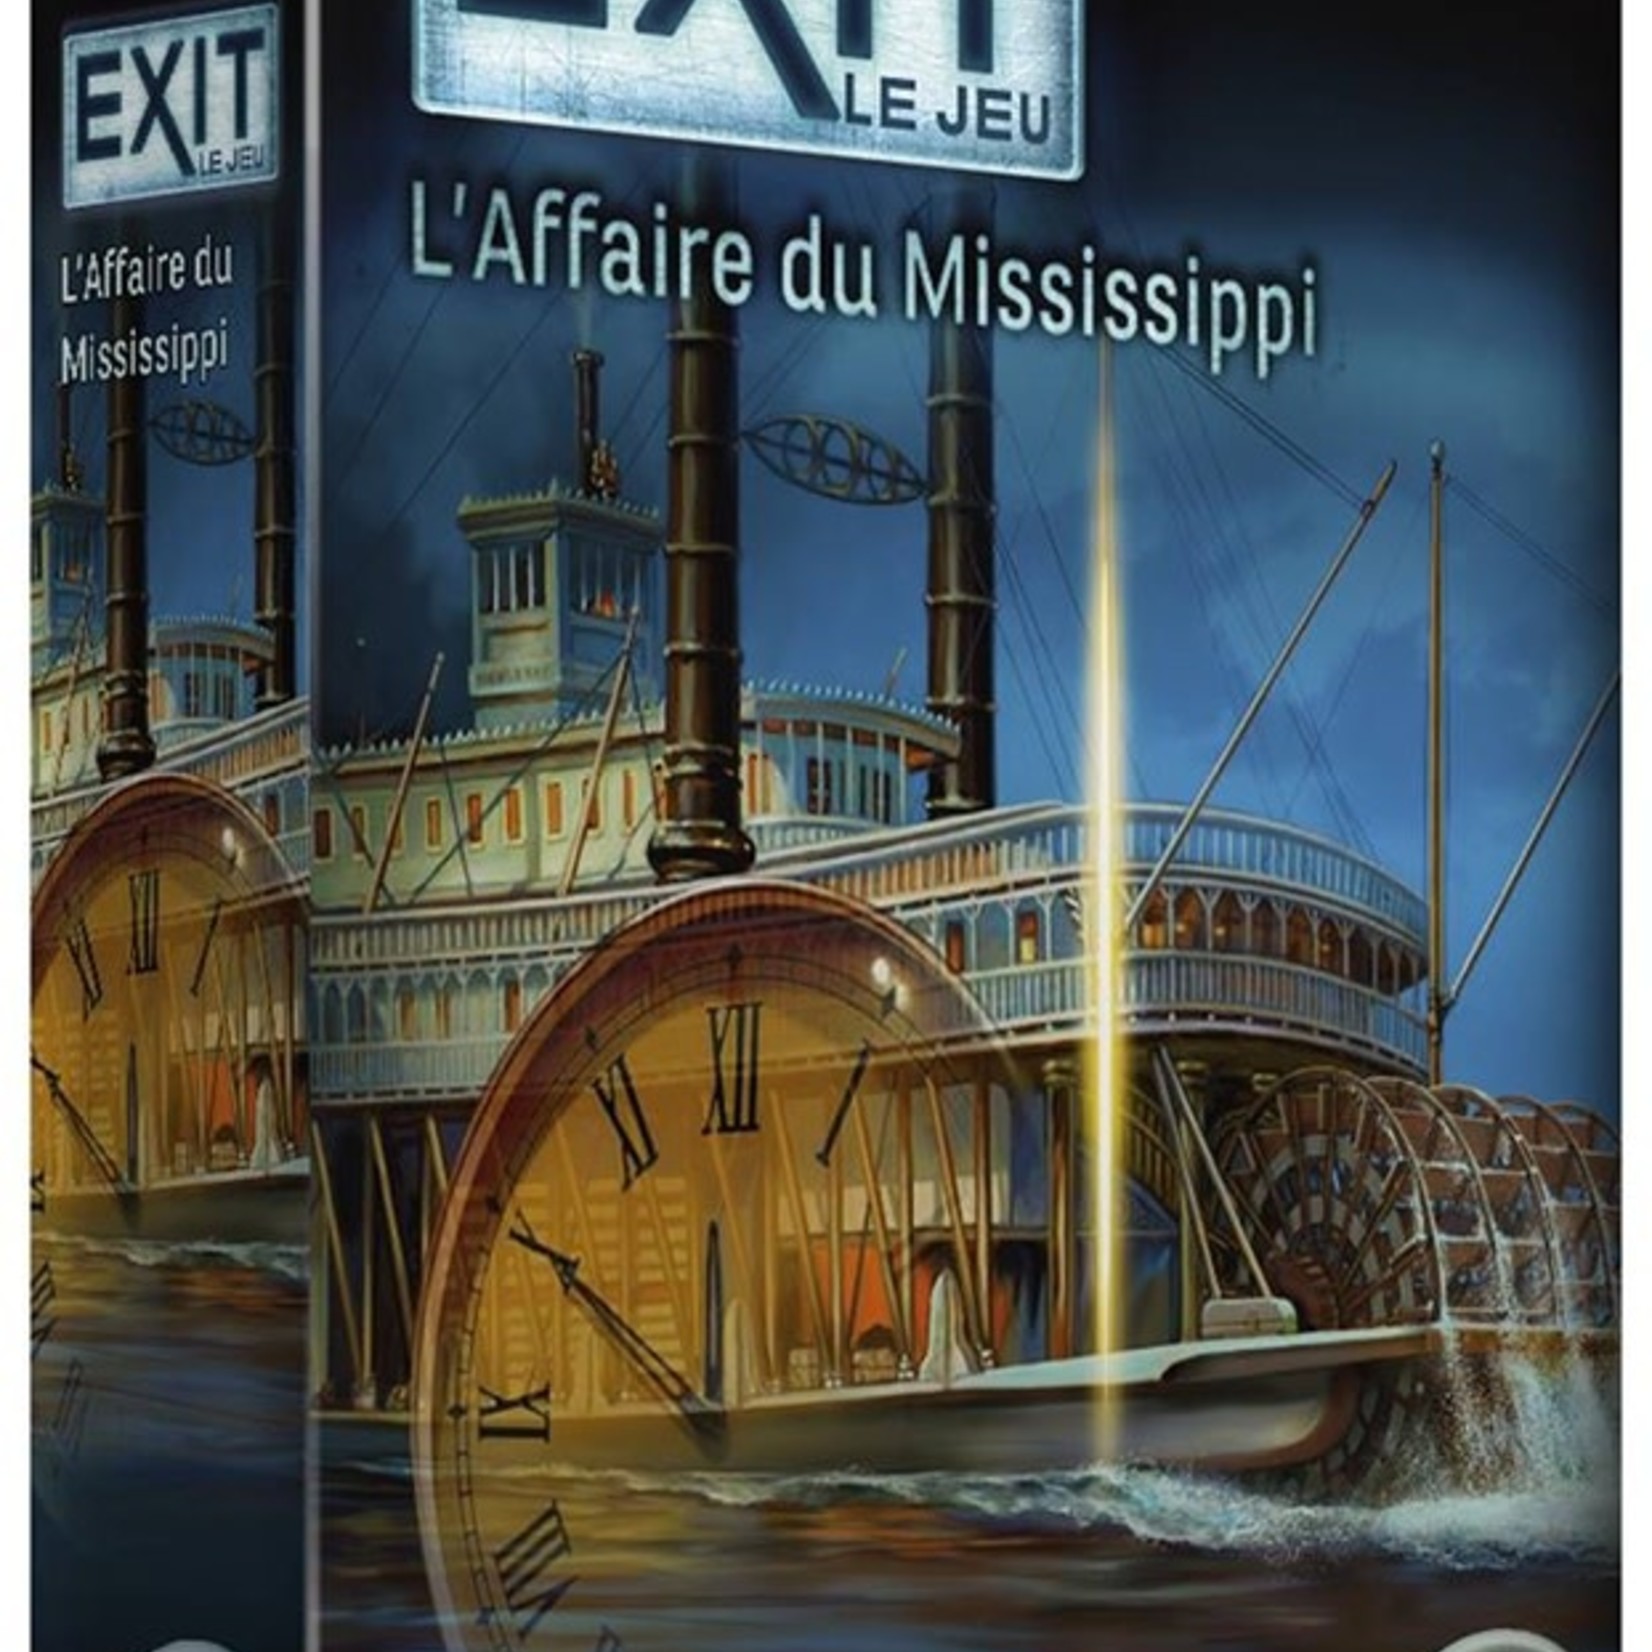 IELLO EXIT - L'Affaire du Mississippi